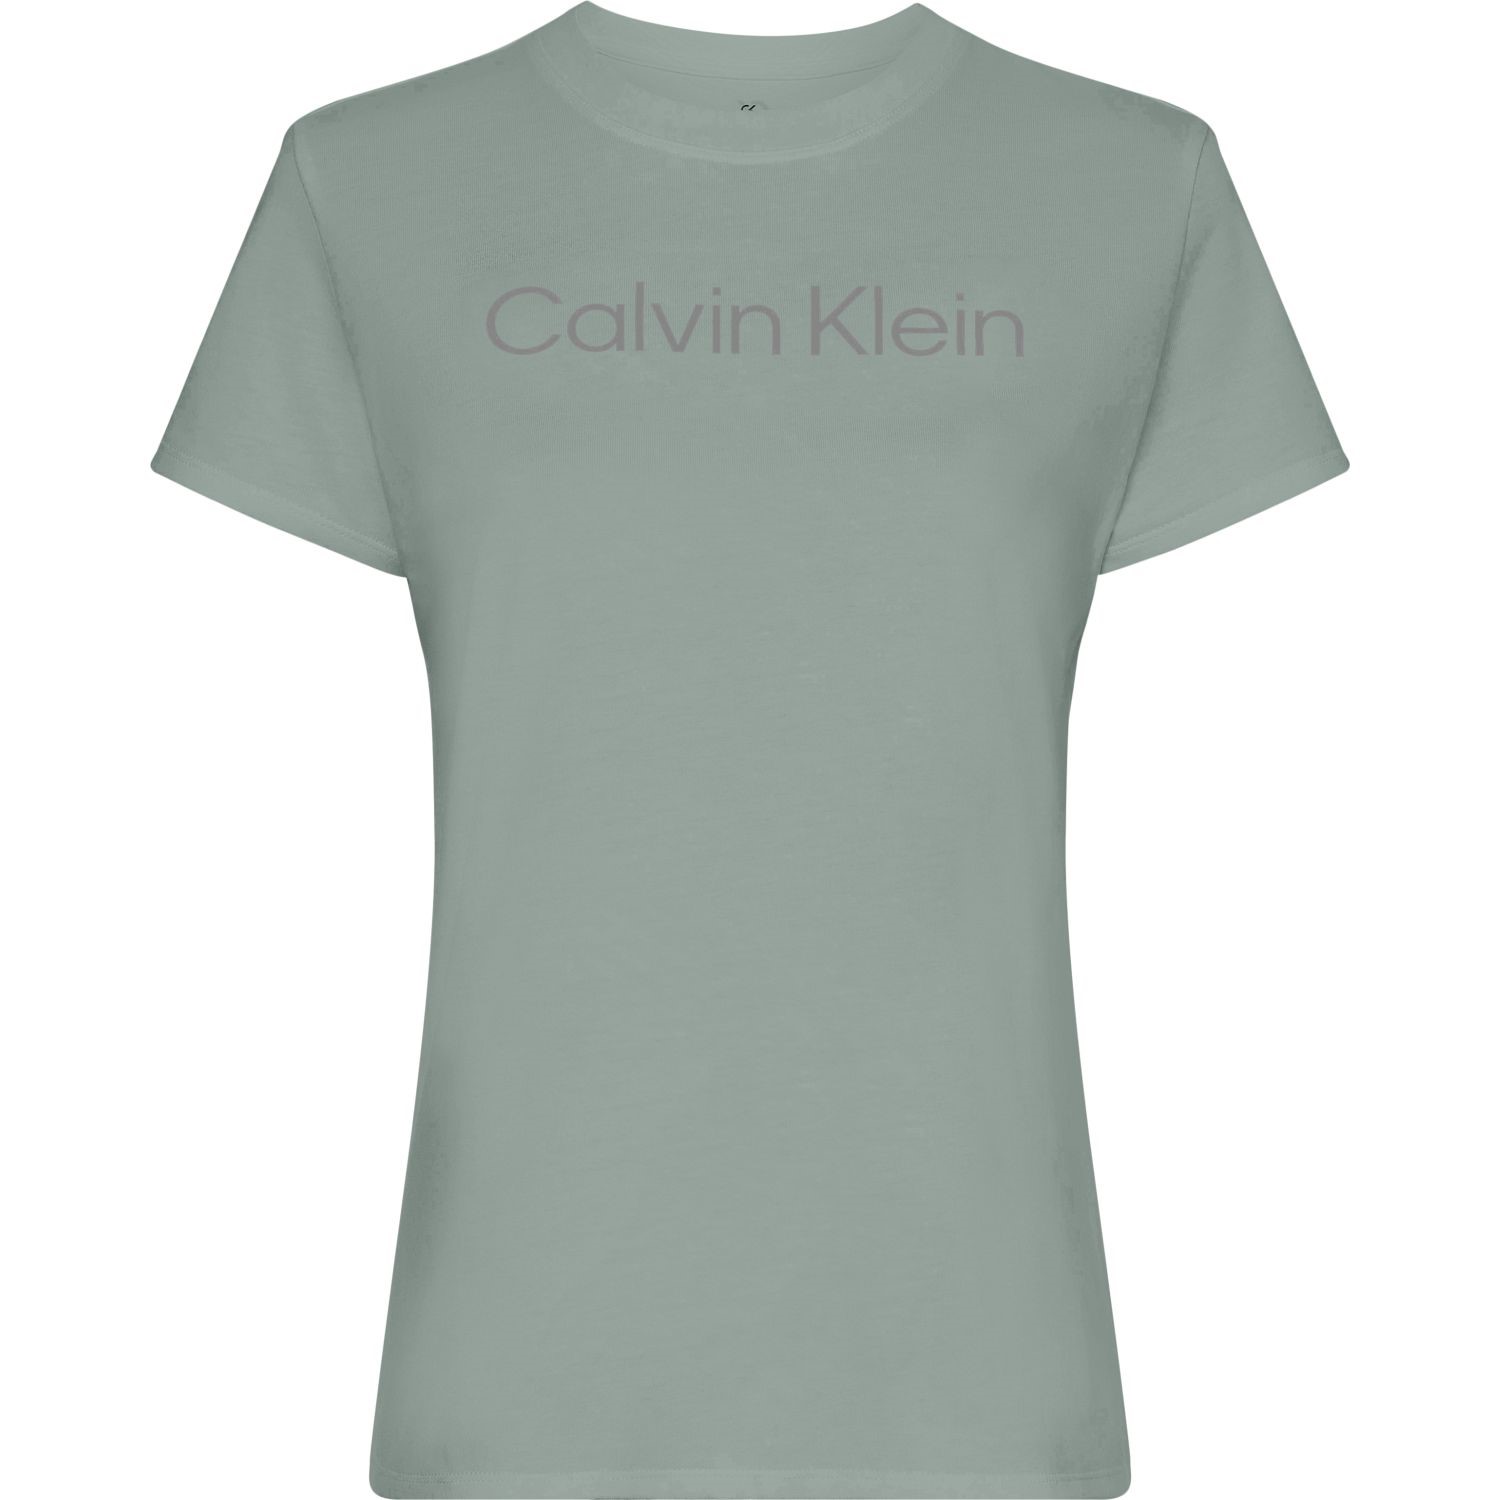 Klein Calvin - Sport - Essentials Sportbekleidung Sport SS T-Shirts T-Shirt -